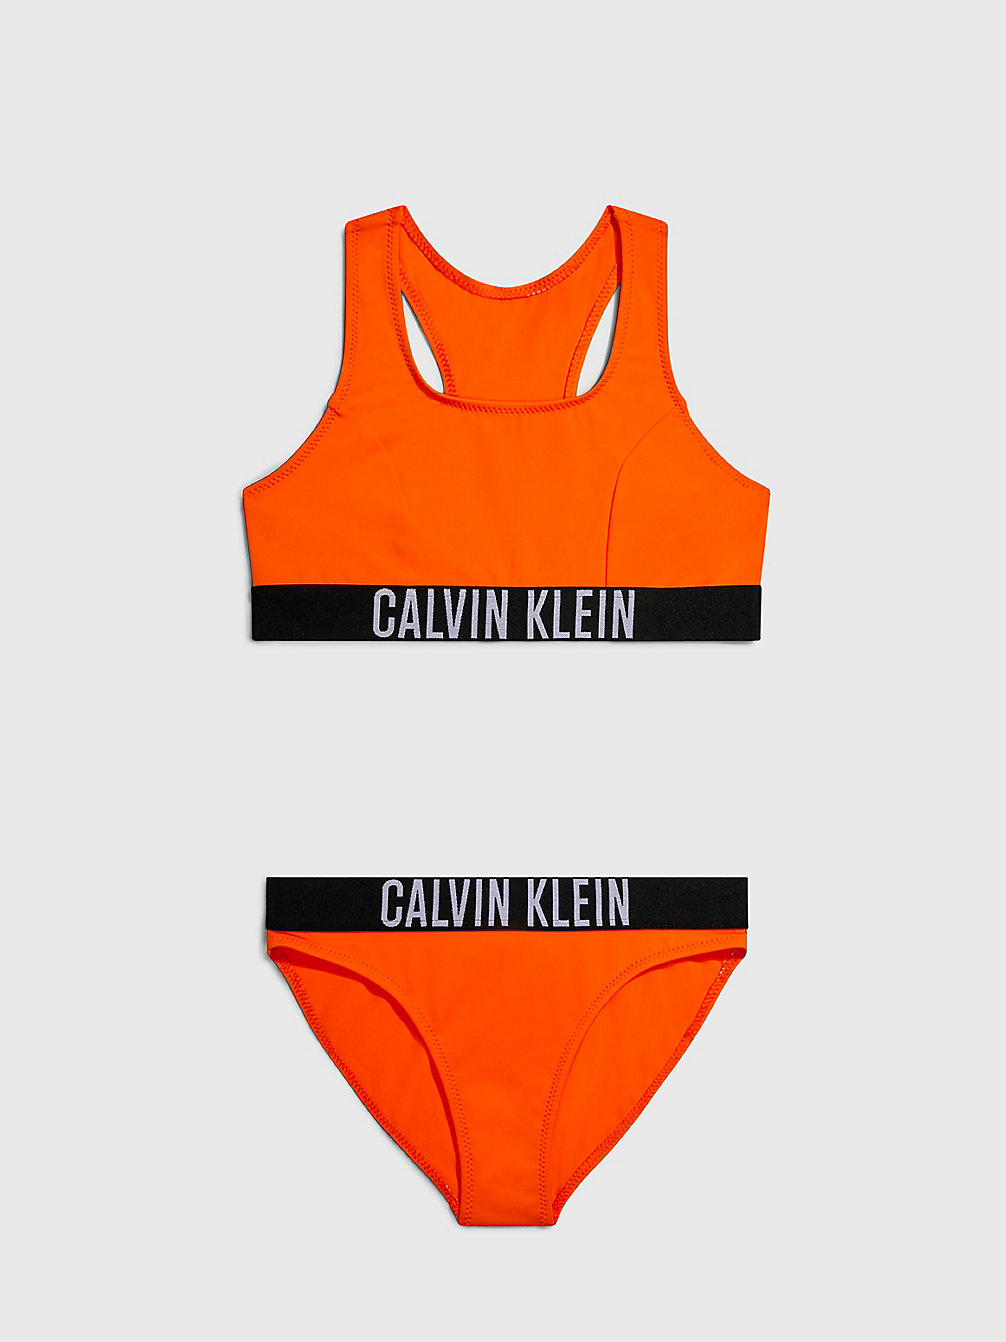 VIVID ORANGE Girls Bralette Bikini Set - Intense Power undefined girls Calvin Klein